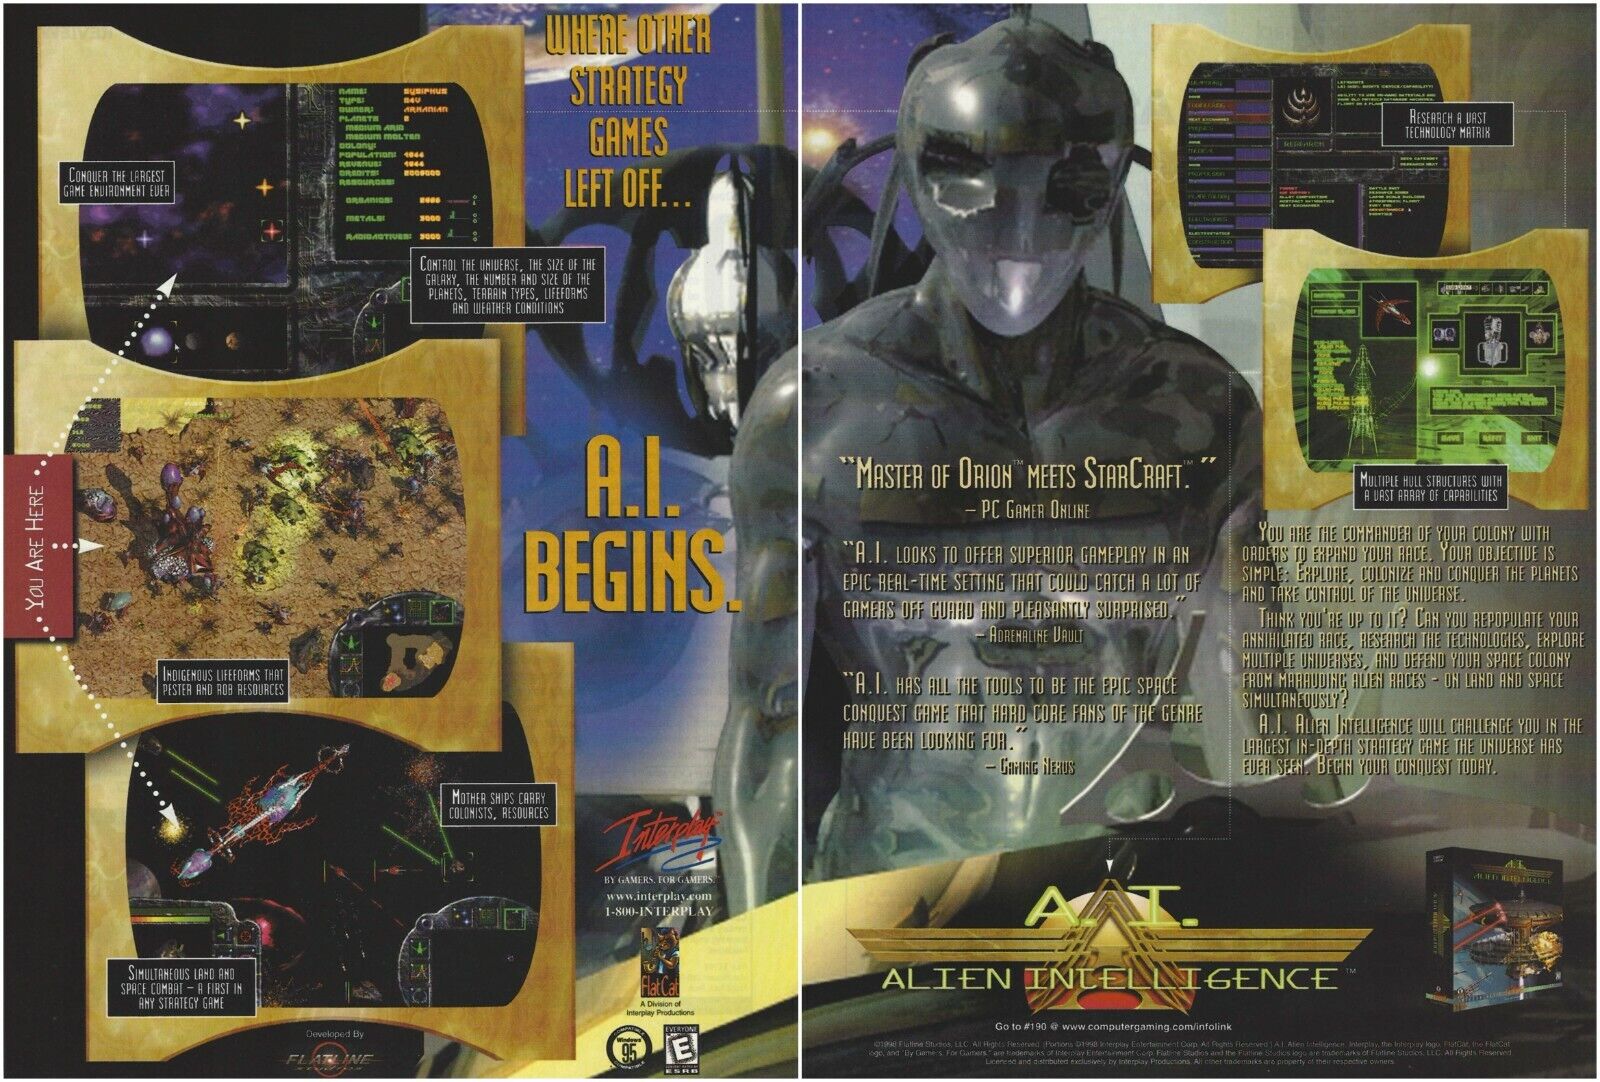 Alien Intelligence Print Ad/Poster Art PC Big Box (B)